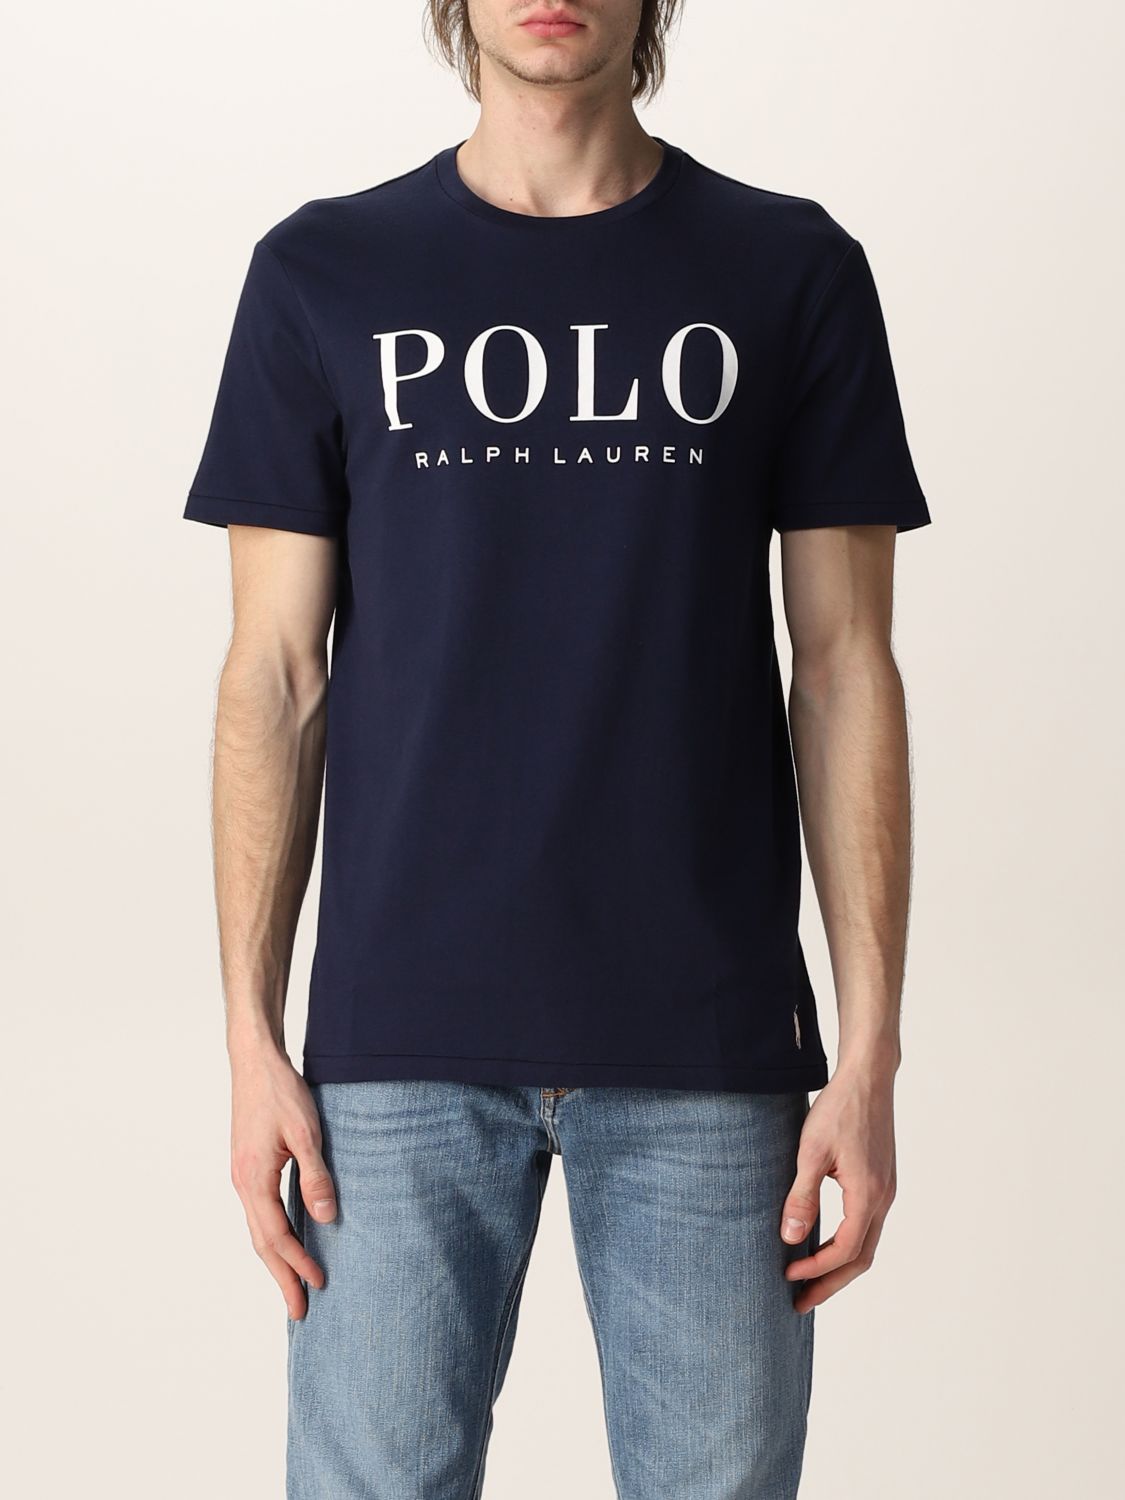 Handschrift Ik heb het erkend Plaatsen POLO RALPH LAUREN: cotton t-shirt with logo - Navy | Polo Ralph Lauren t- shirt 710860829 online on GIGLIO.COM